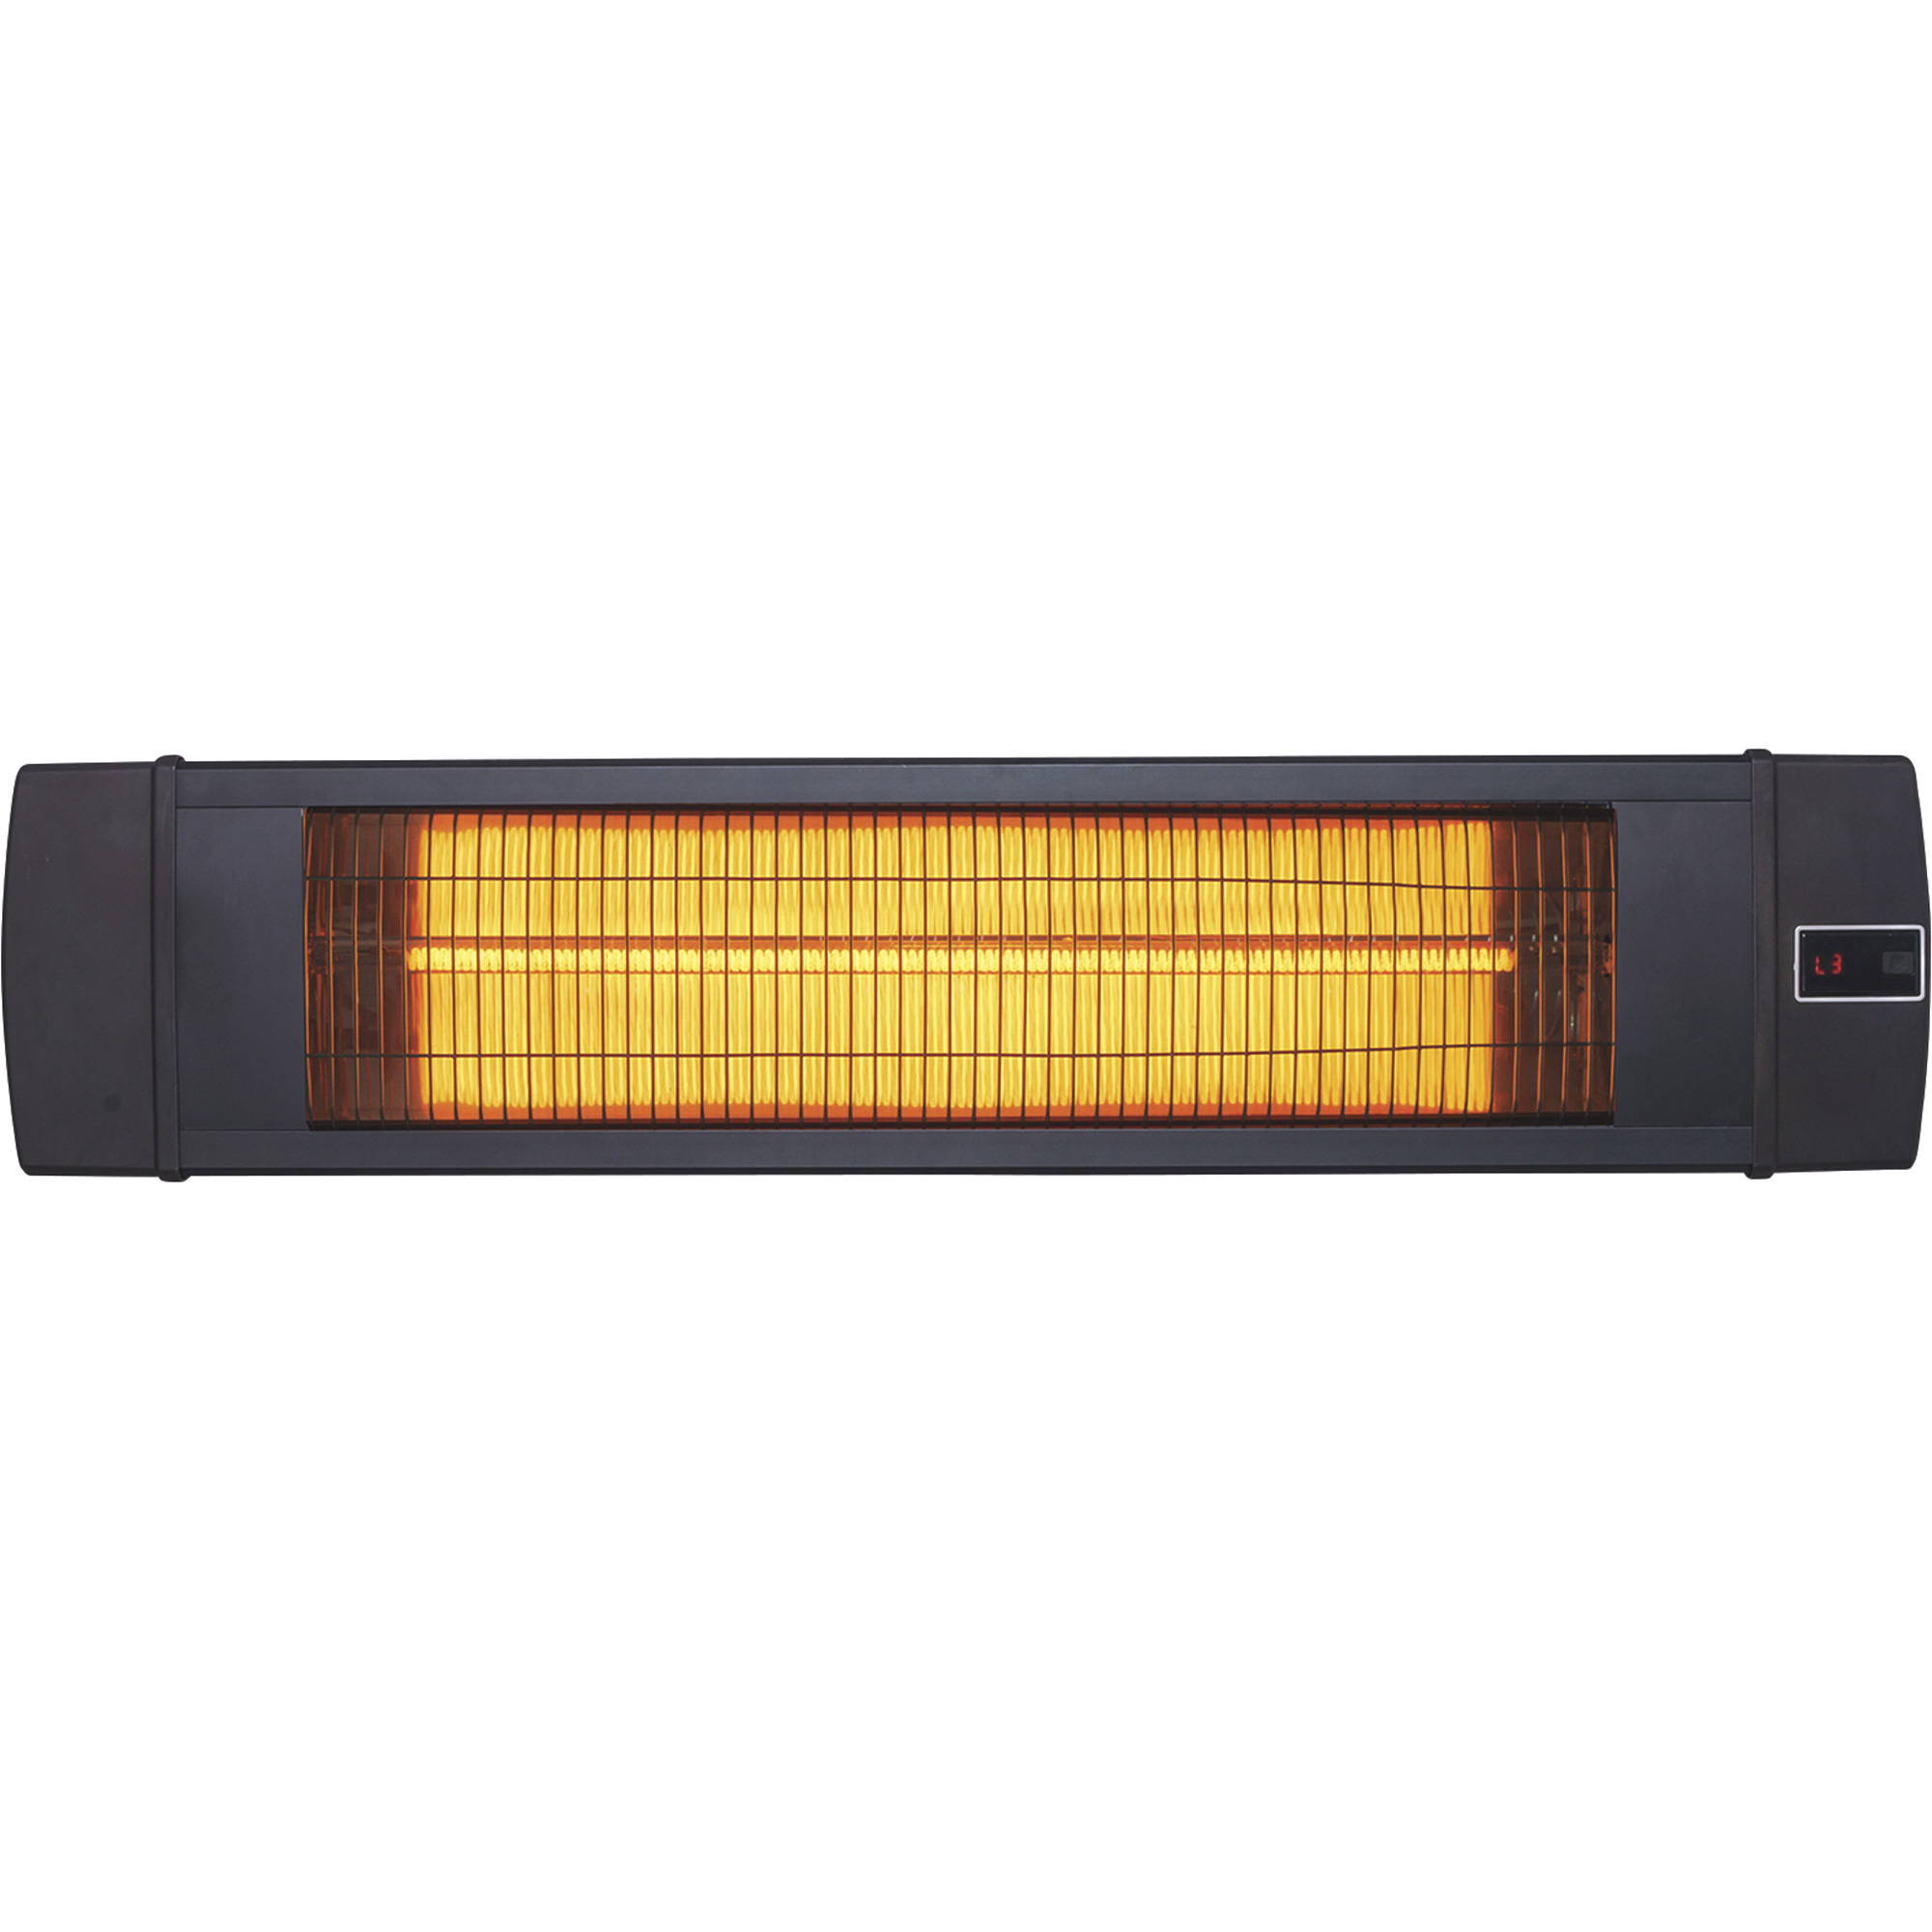 Dr. Heater Infrared Indoor/Outdoor Patio Heater, 1500 Watt, Model DR-238